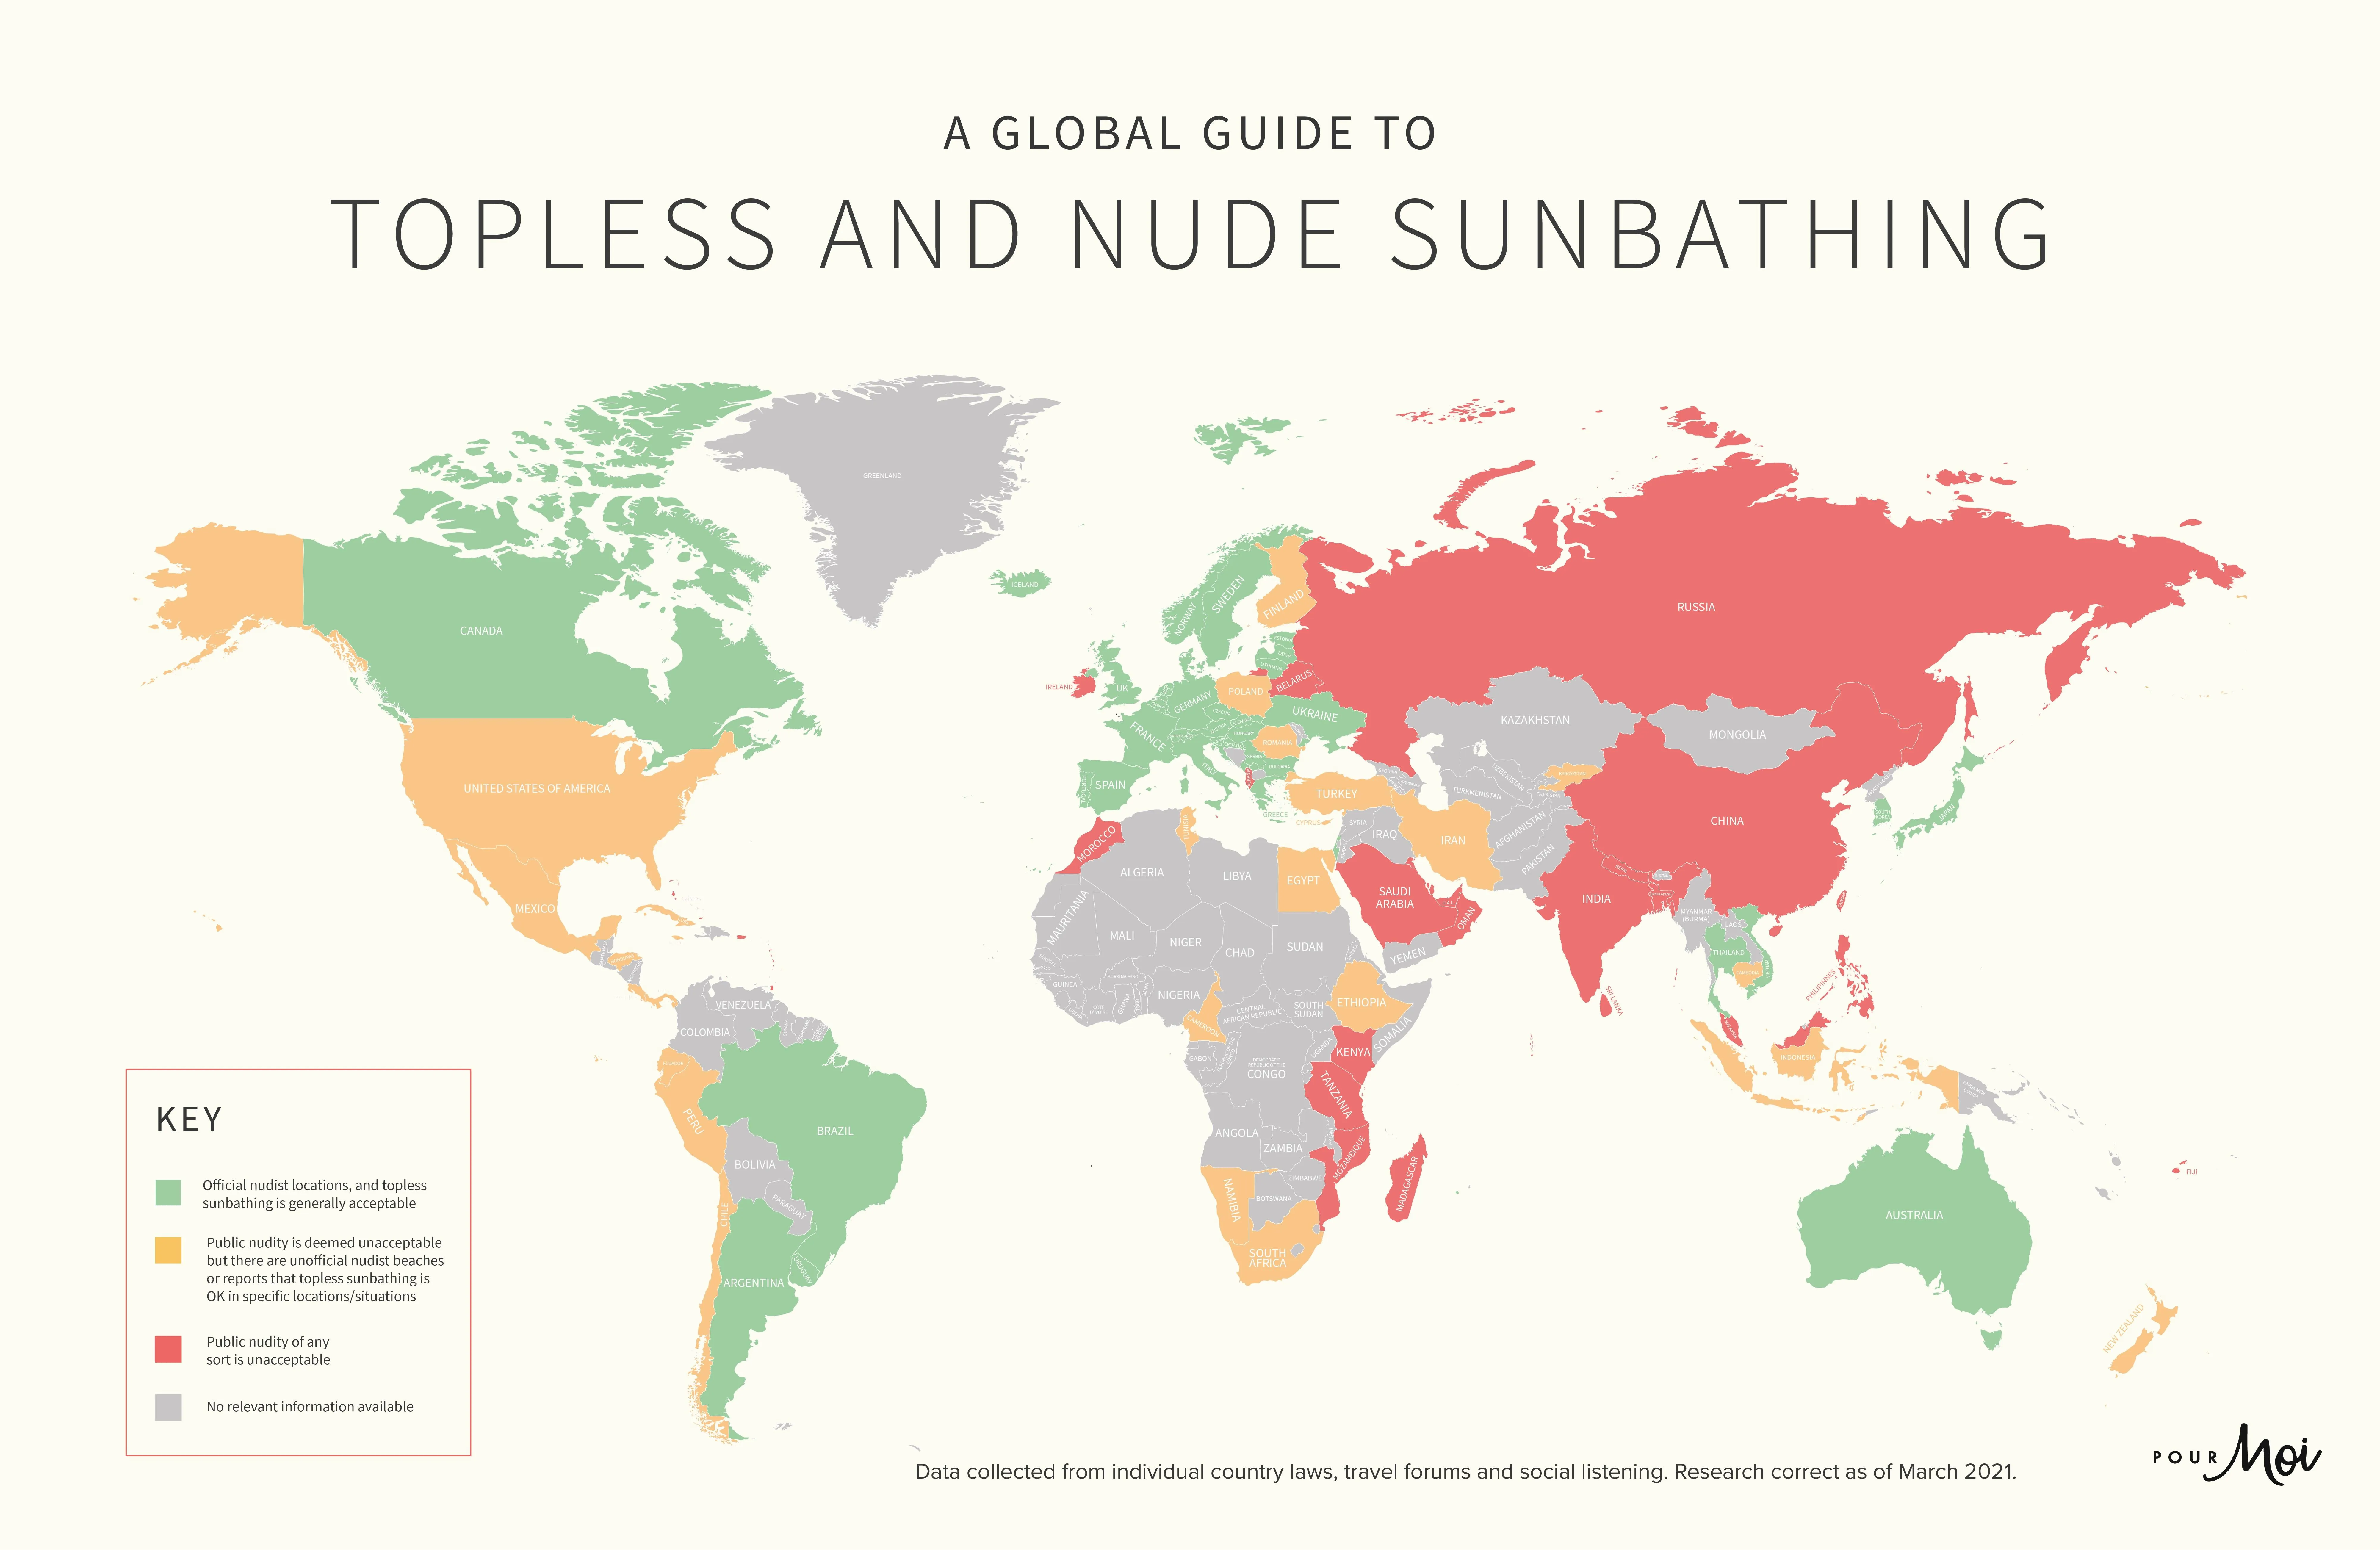 У мережі опублікували мапу, яка показує, в яких країнах дозволено засмагати топлес і оголеним